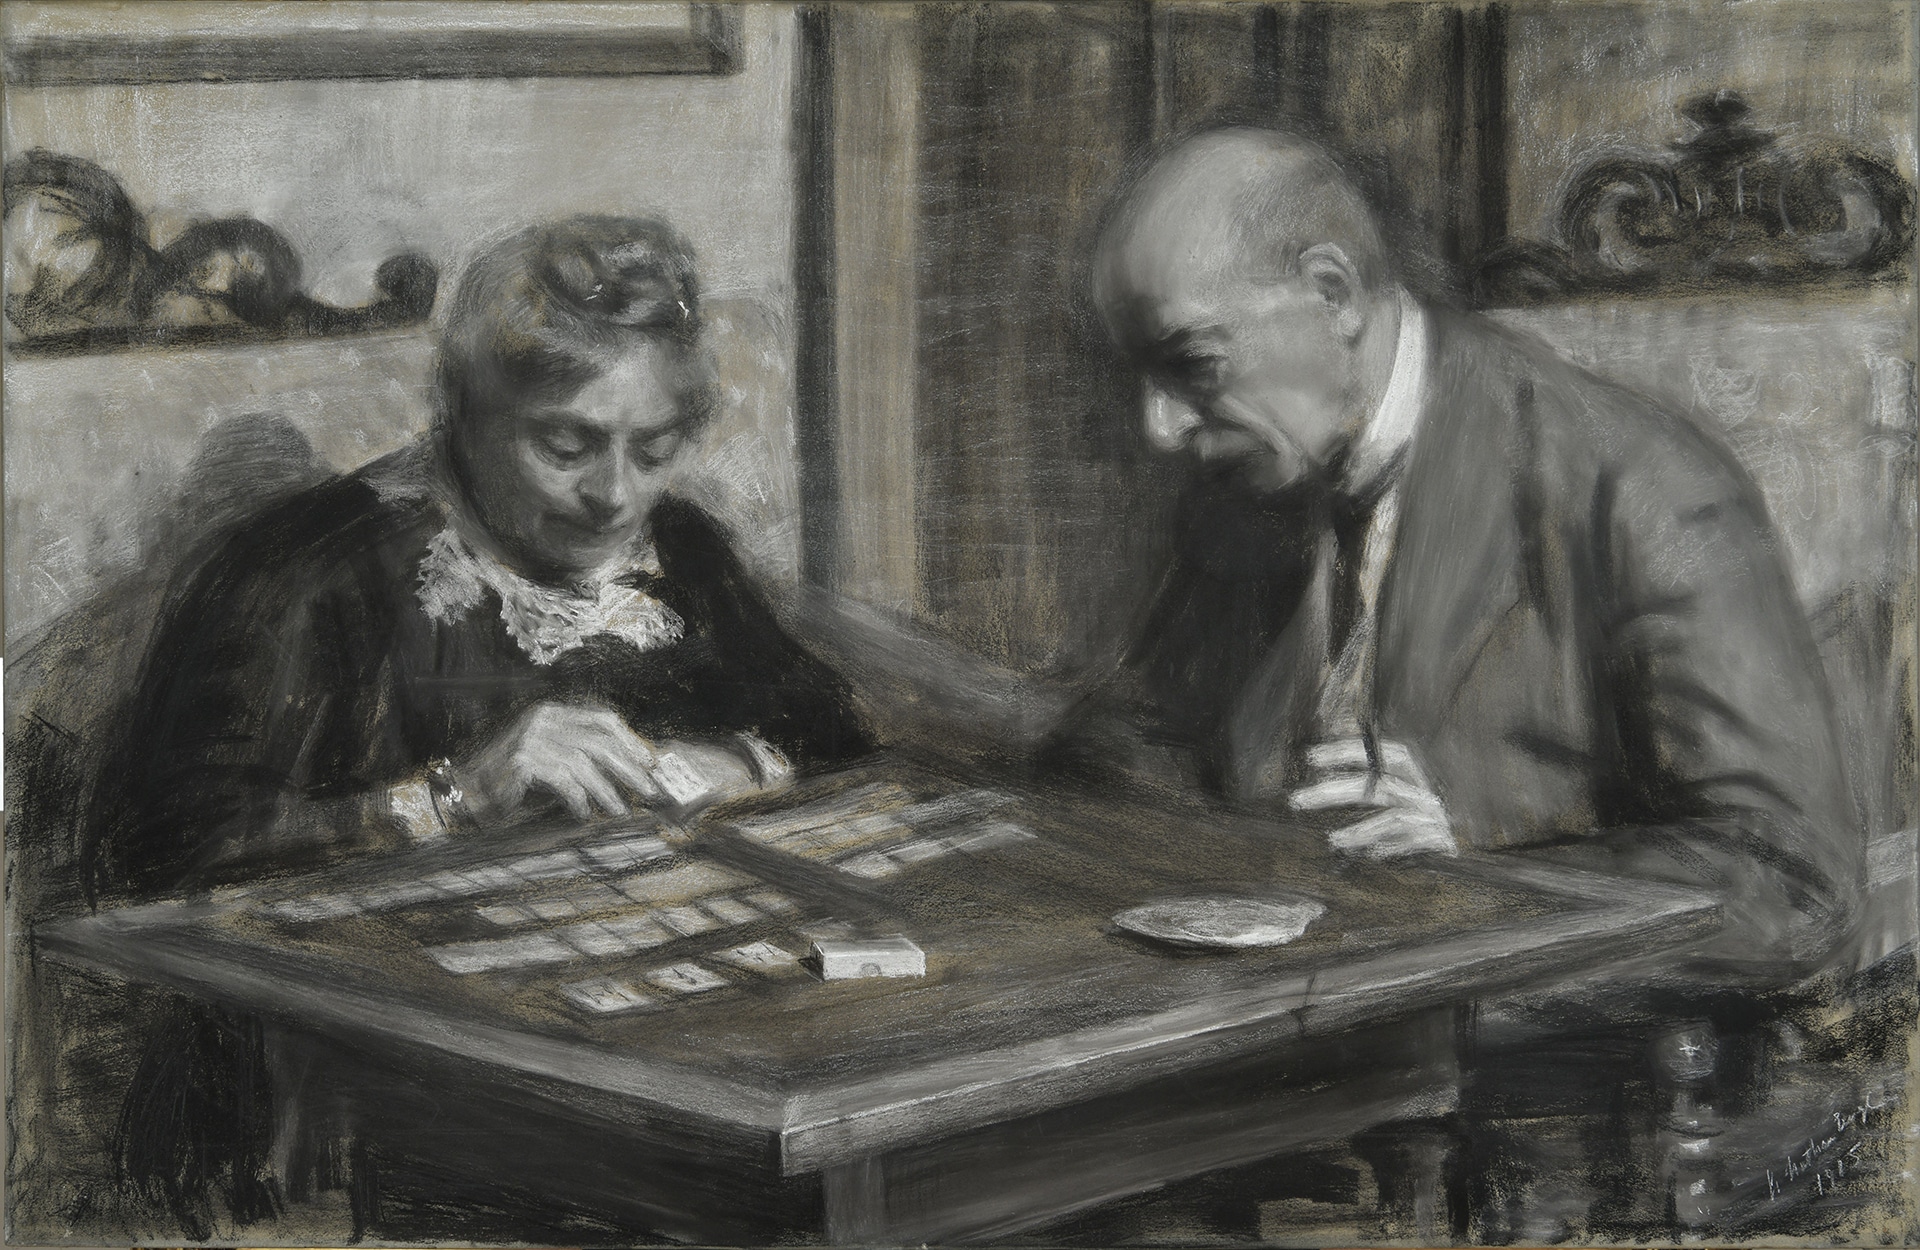 Annie Nathan "Ritratto dei genitori Virginia Mieli ed Ernesto Nathan", 1915. Pronipoti Ernesto Nathan